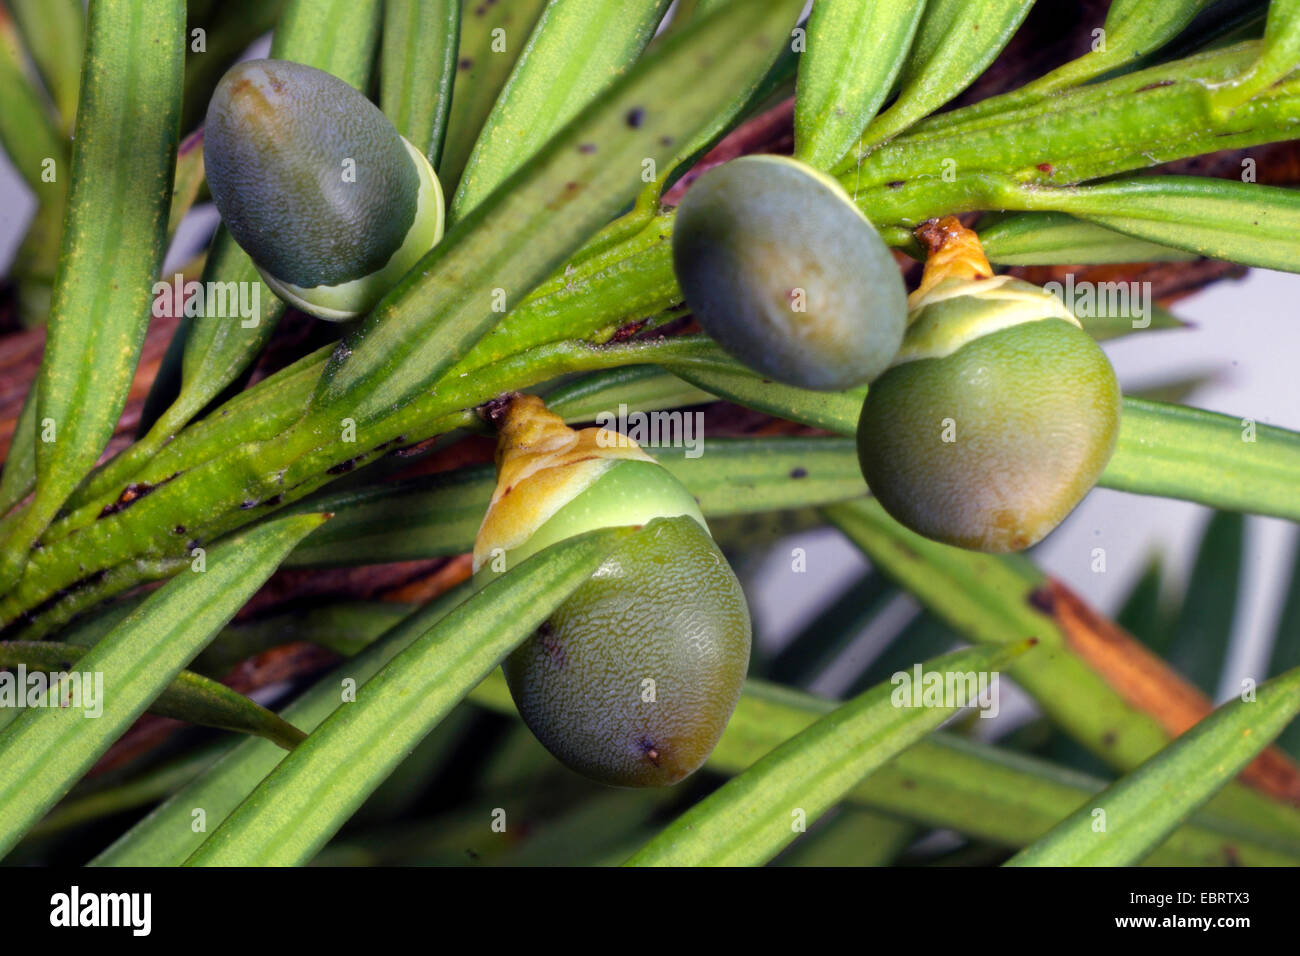 Common yew, English yew, European yew (Taxus baccata), immature seeds Stock Photo